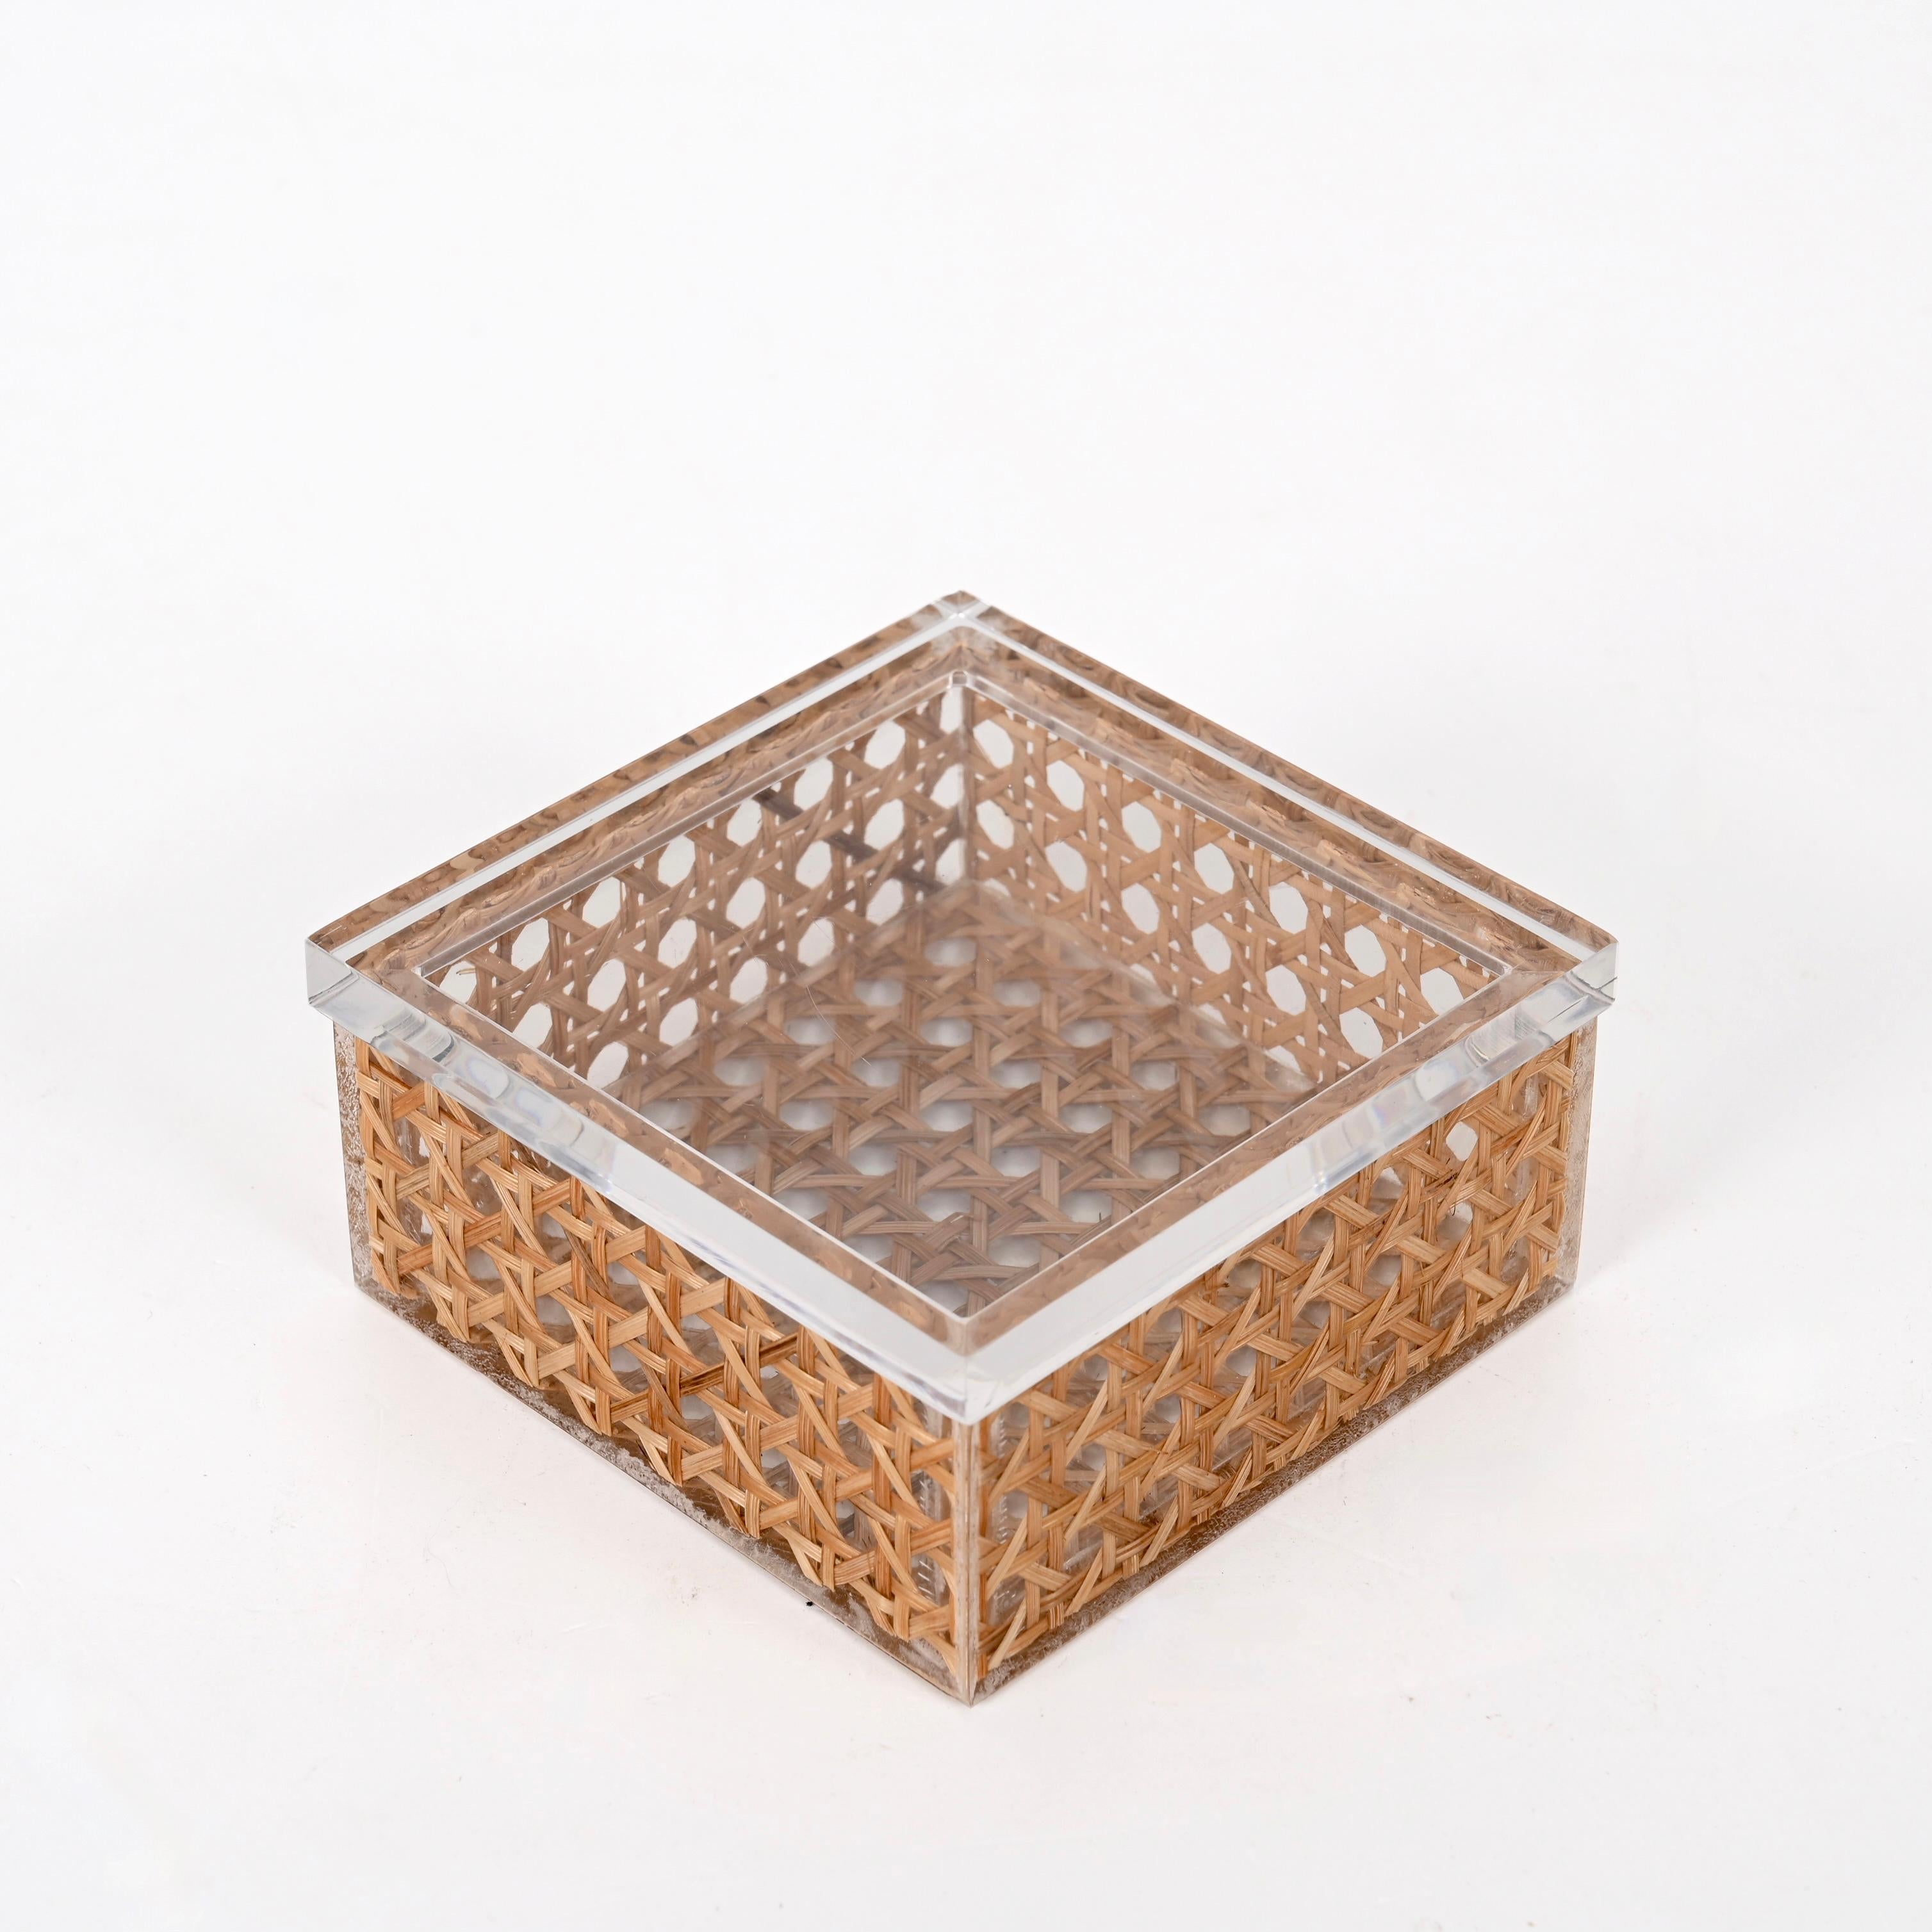 Wunderschöne Kiste aus Lucite und Wiener Strohgeflecht aus der Jahrhundertmitte. Diese wunderbare Schmuckschatulle wurde in den 1970er Jahren in Italien entworfen, in Anlehnung an den Stil von Christian Dior.

Es besteht aus zwei Teilen, einem